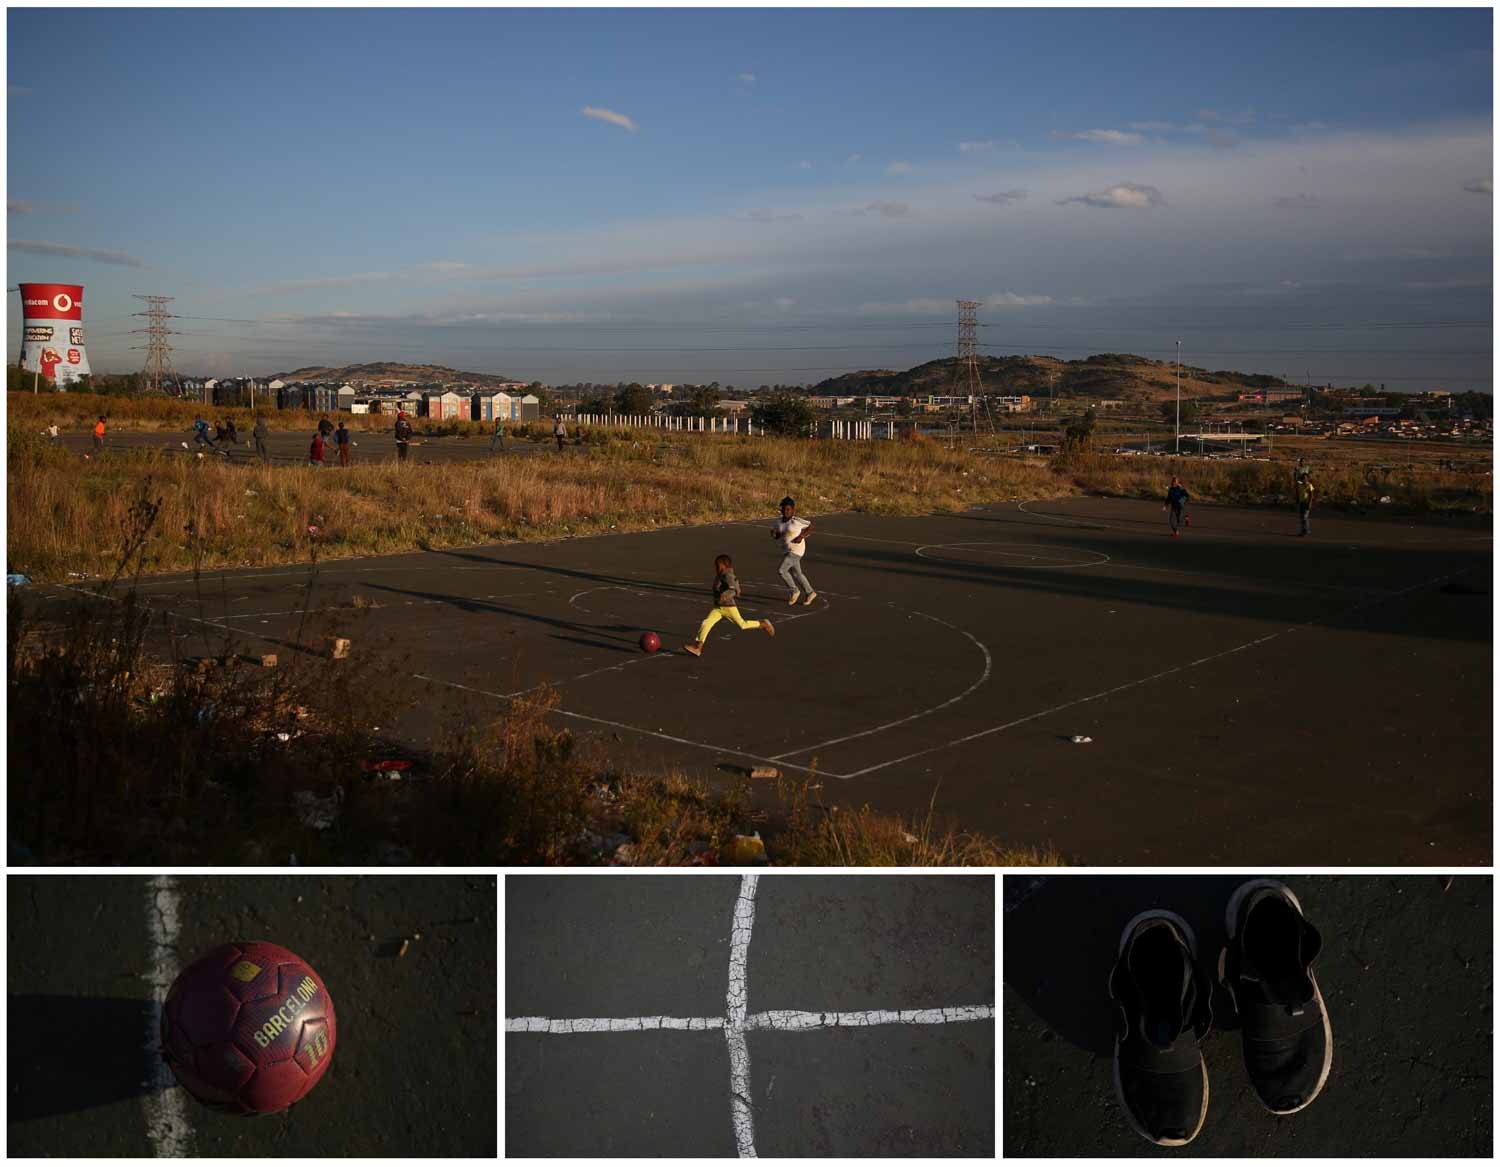  Na cidade de Soweto, na &Aacute;frica do Sul, um grupo de crian&ccedil;as joga futebol. Foto: Siphiwe Sibeko - Reuters  